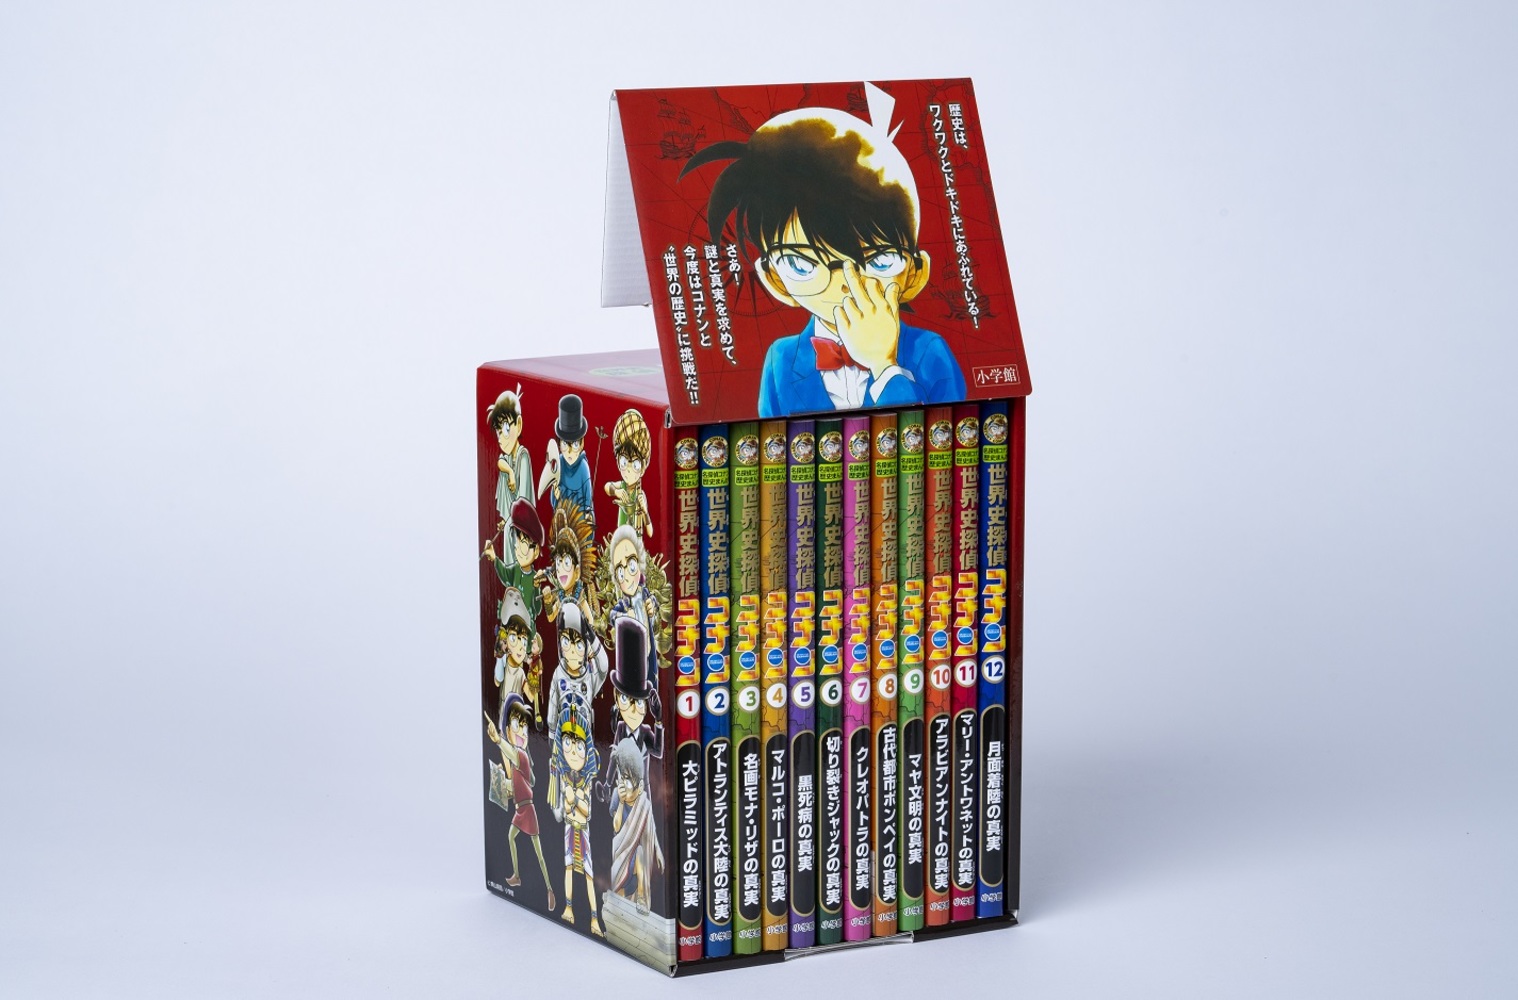 名探偵コナン DVD セレクション DVD 全12巻 全巻セット - ブルーレイ